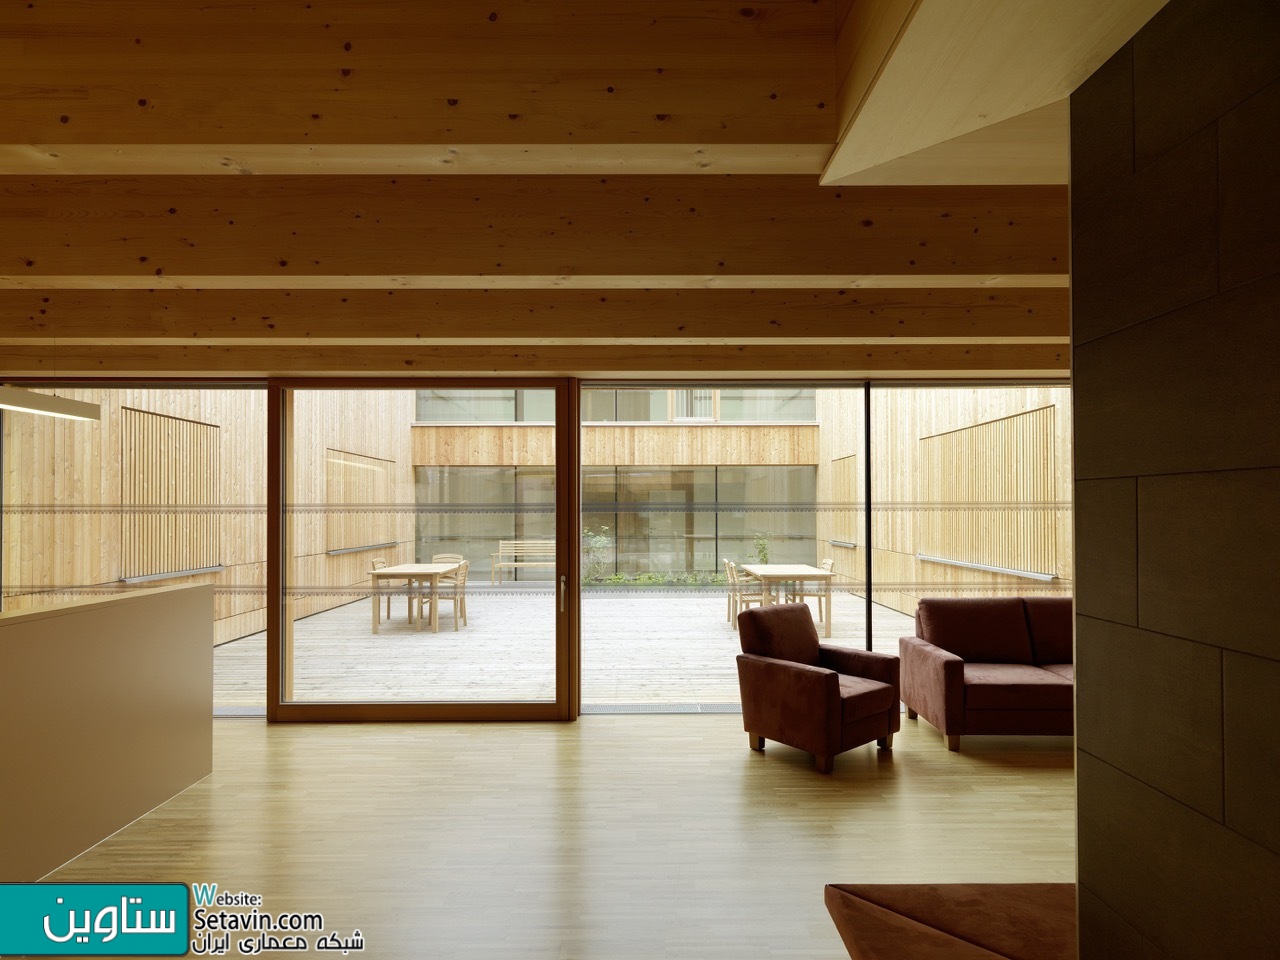 43 نمونه قابل توجه از معماری فضاهای بیمارستان